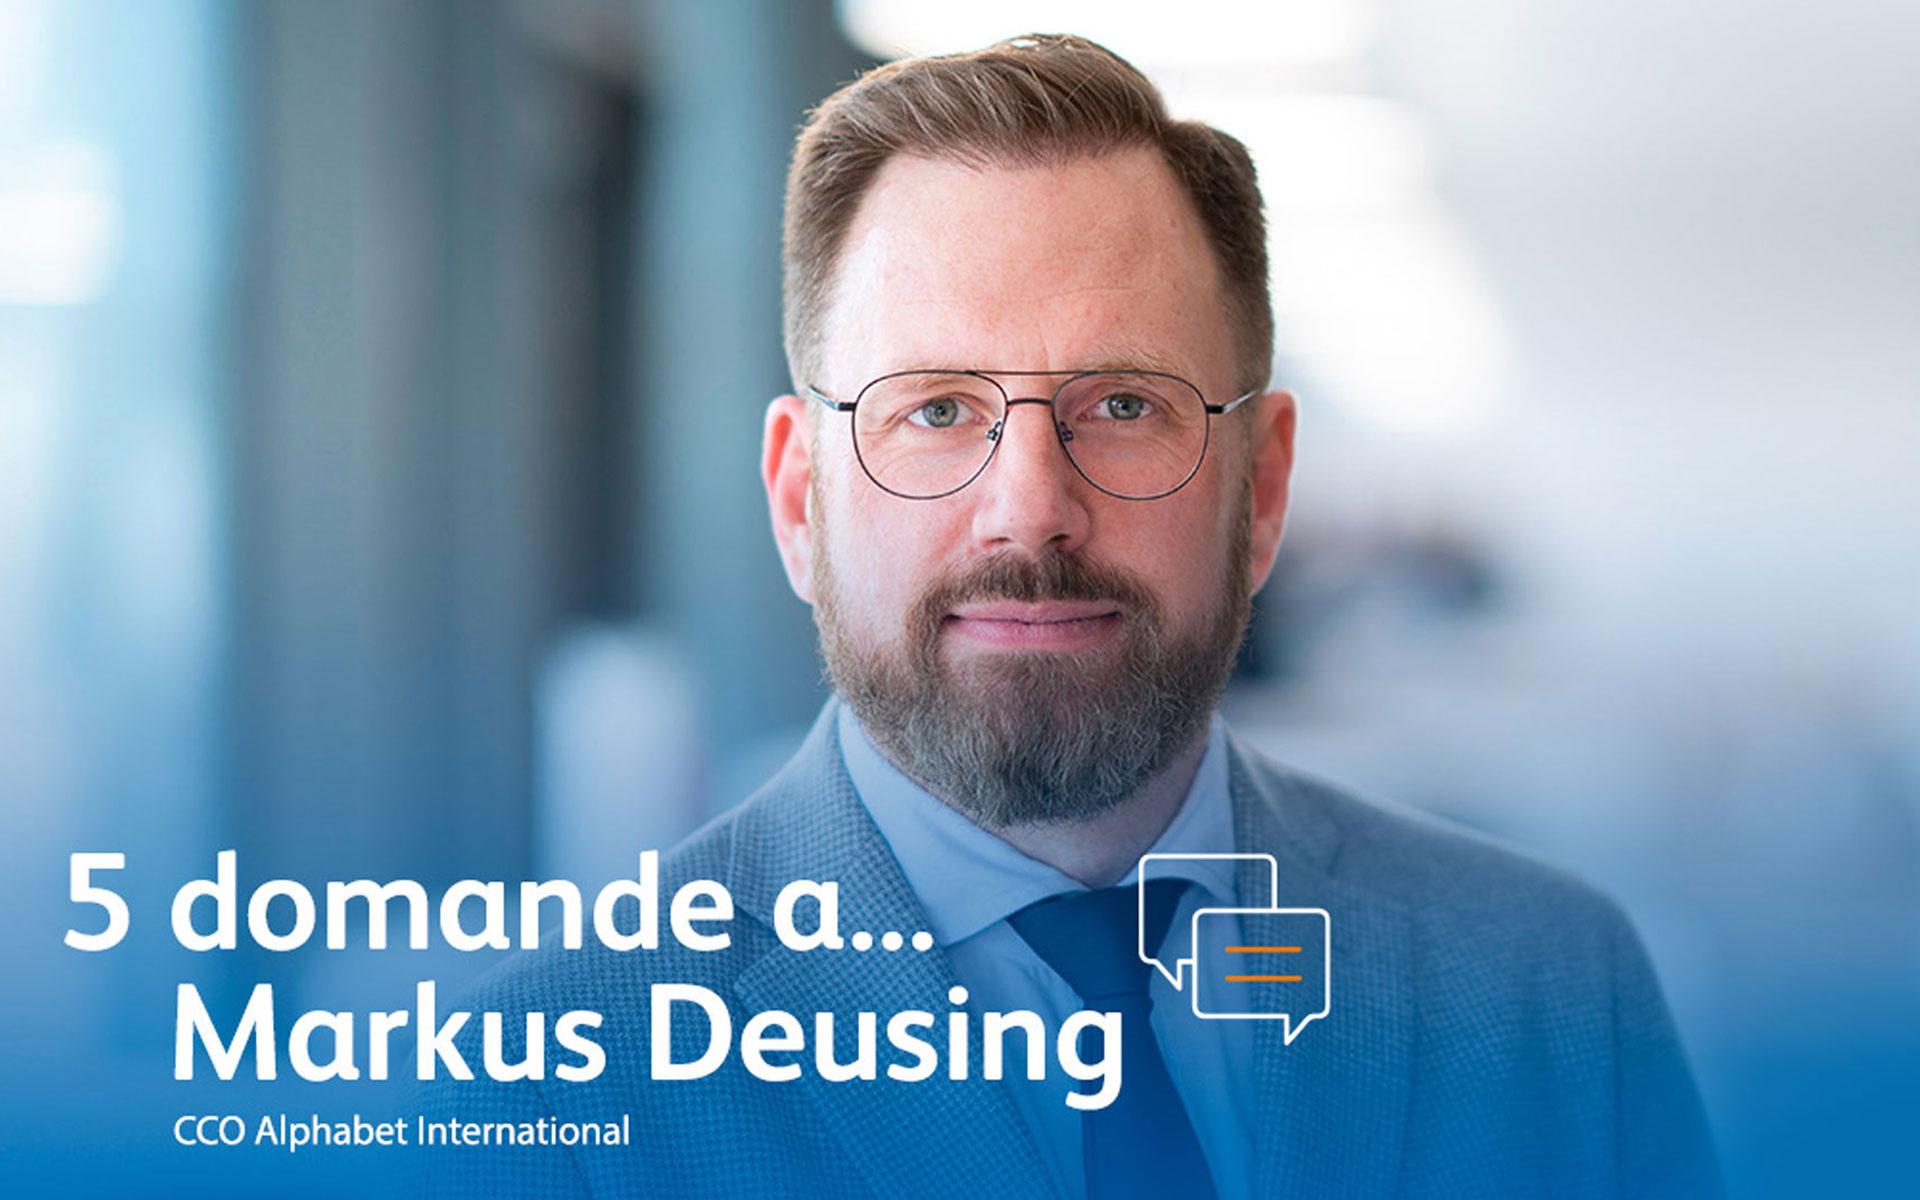 Markus Deusing